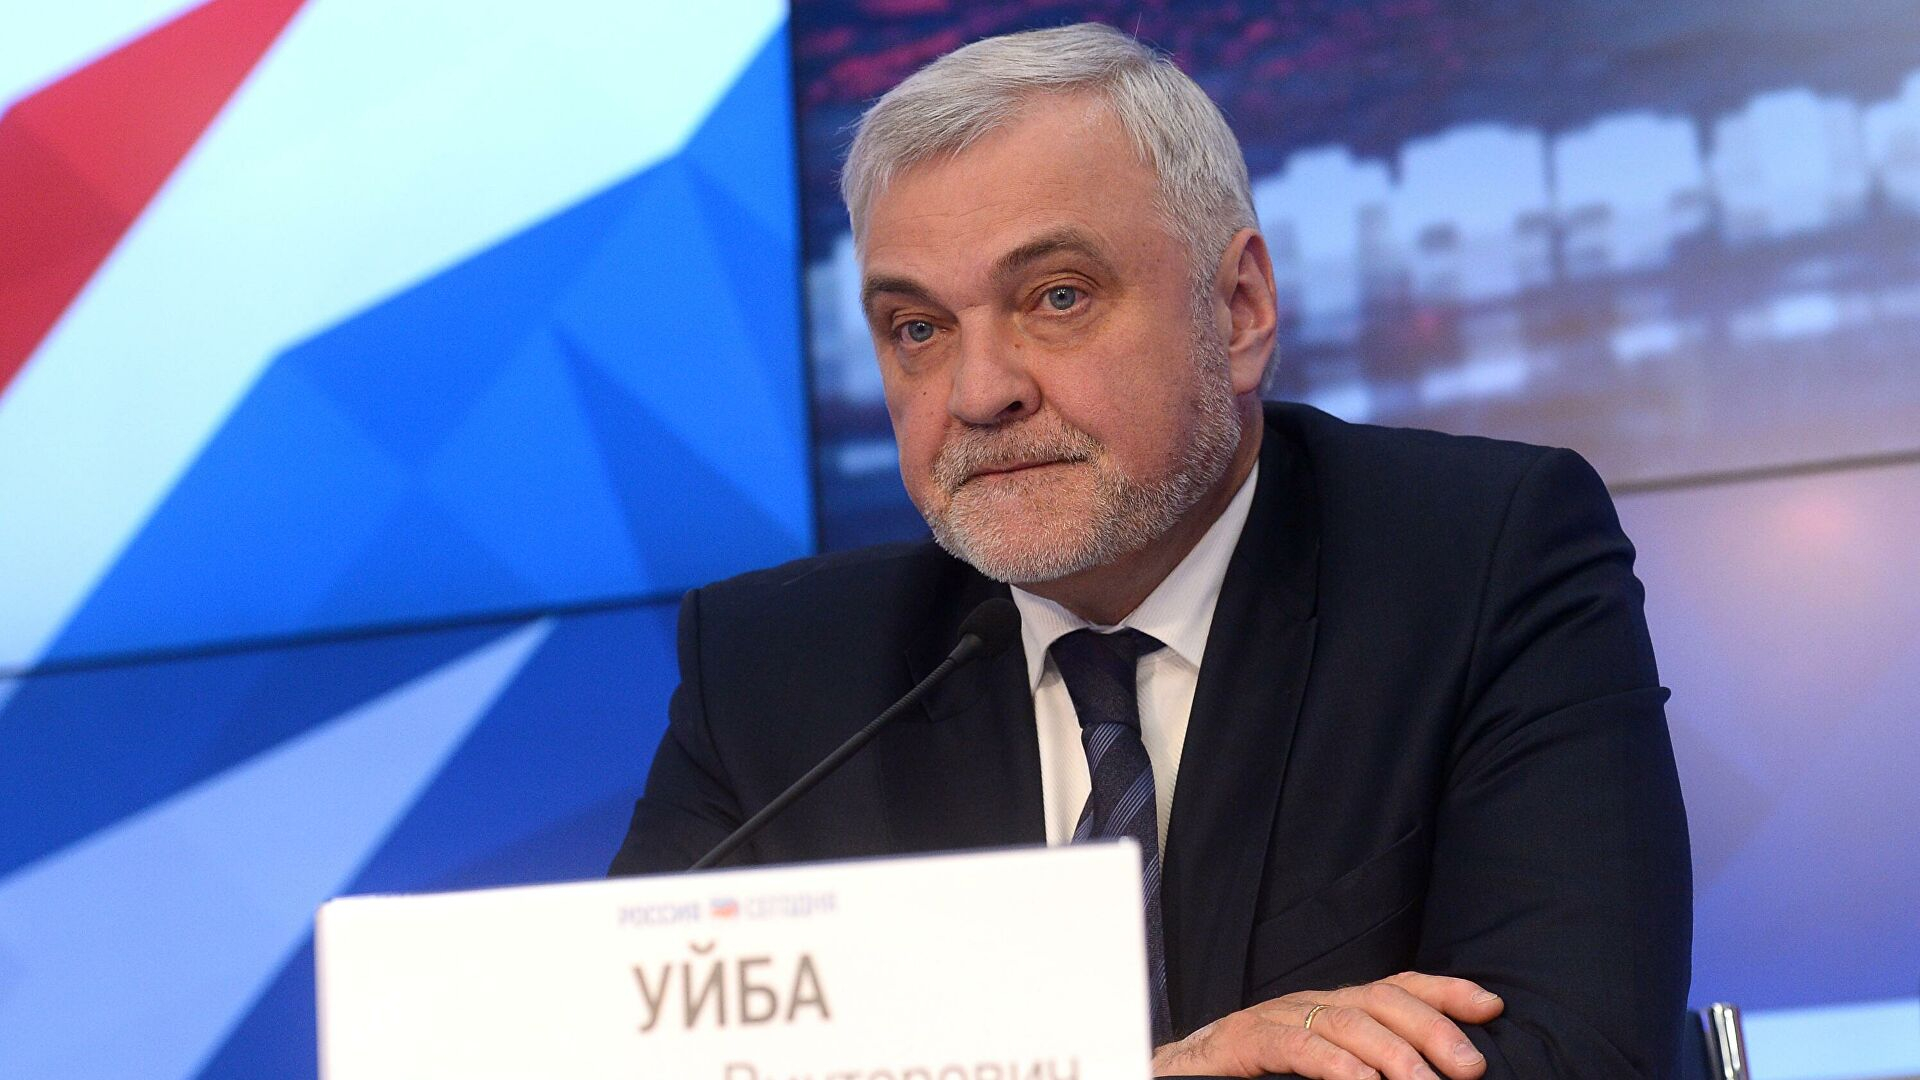 Глава Коми Владимир Уйба отправил в отставку министра финансов